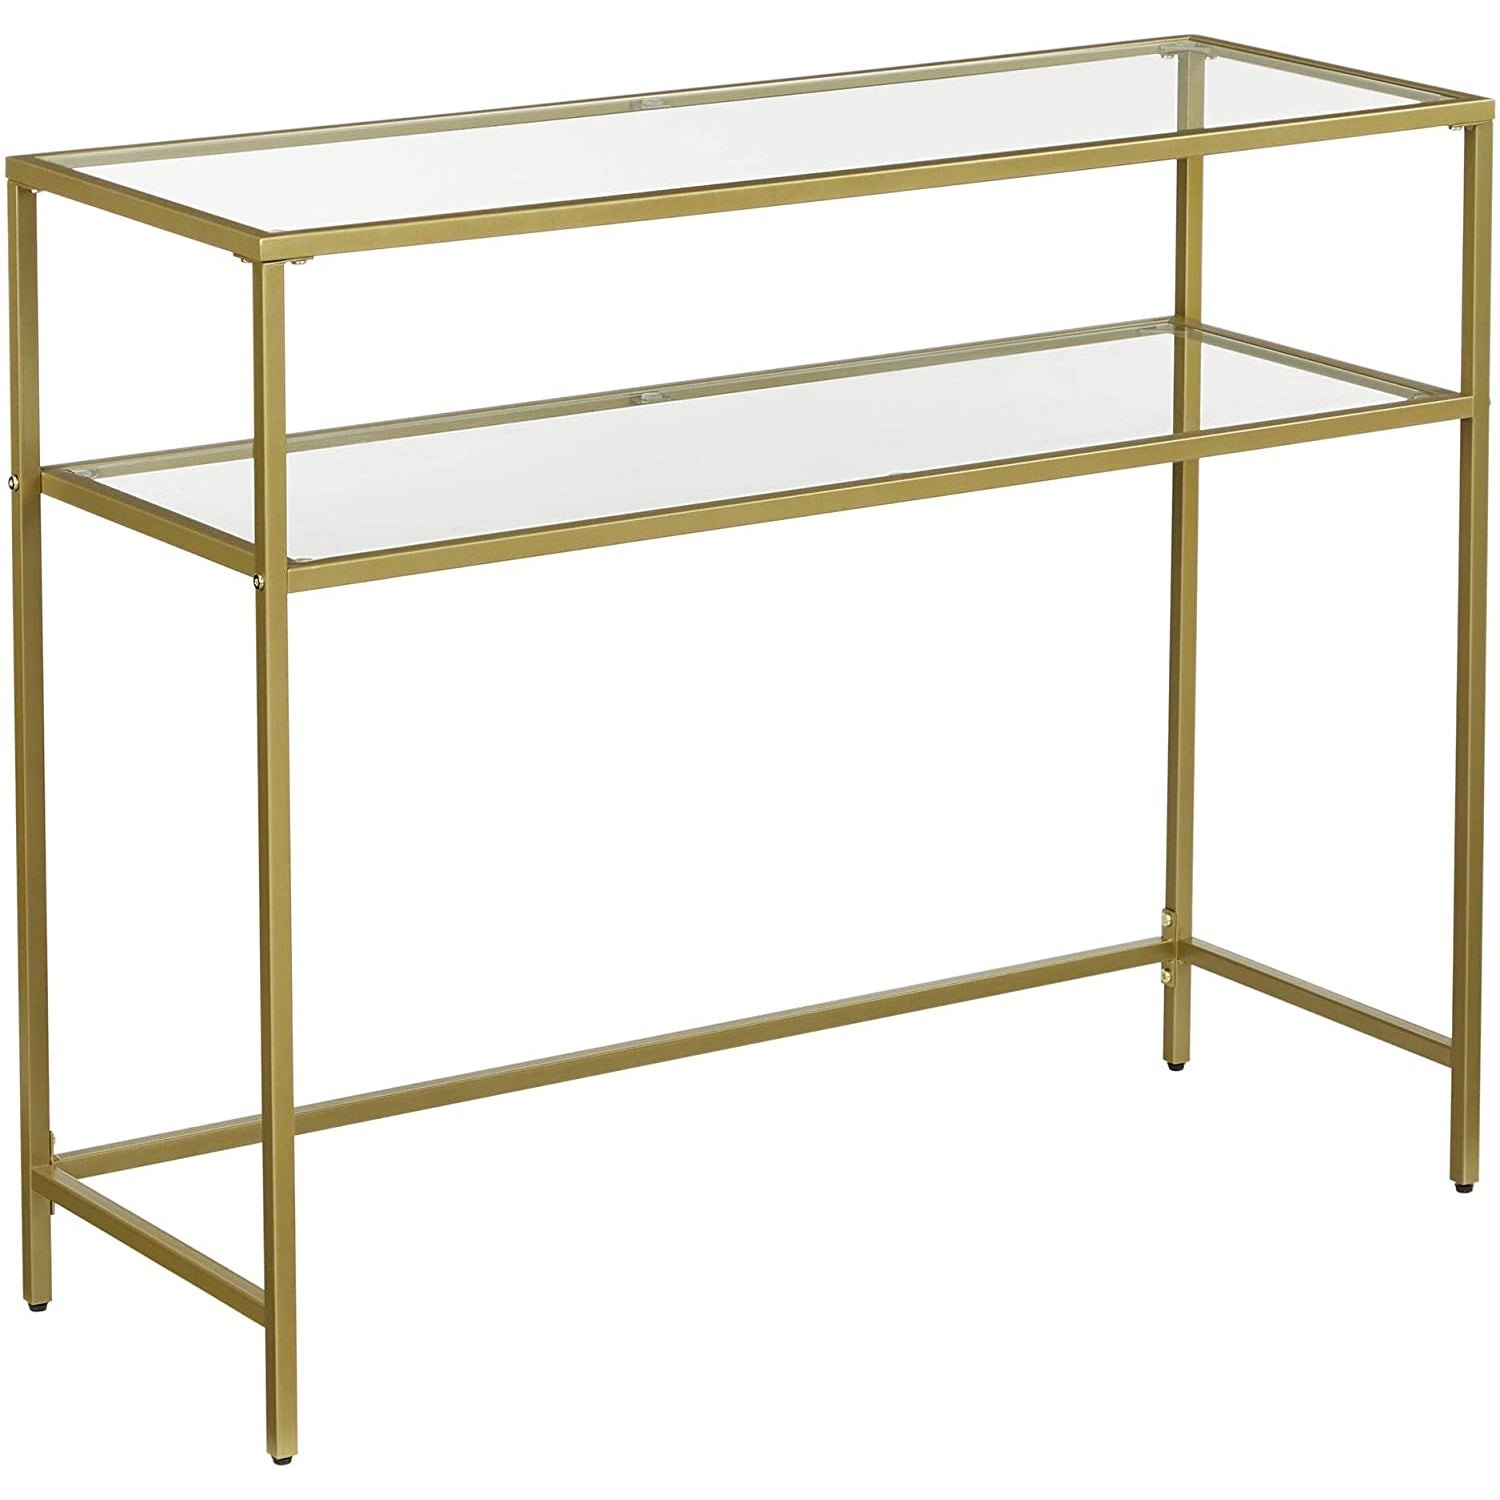 Table console Nancy's Goldfield - Table d'appoint - 2 niveaux - Verre trempé - Structure en métal - Pieds réglables - Or - 35 x 100 x 80 cm